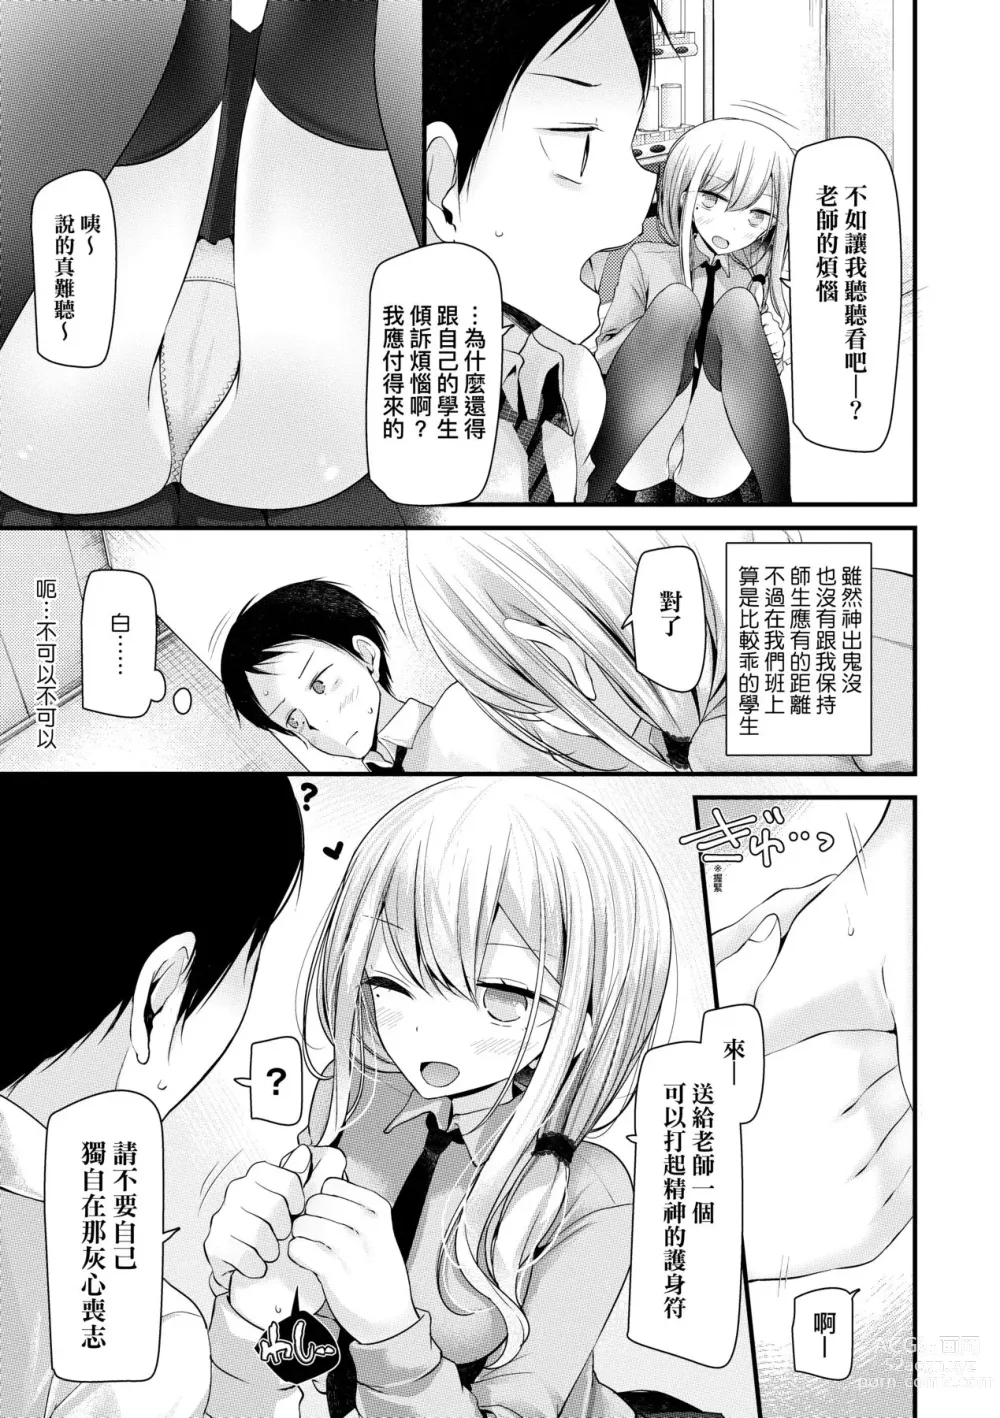 Page 8 of manga JK.REFLE (decensored)